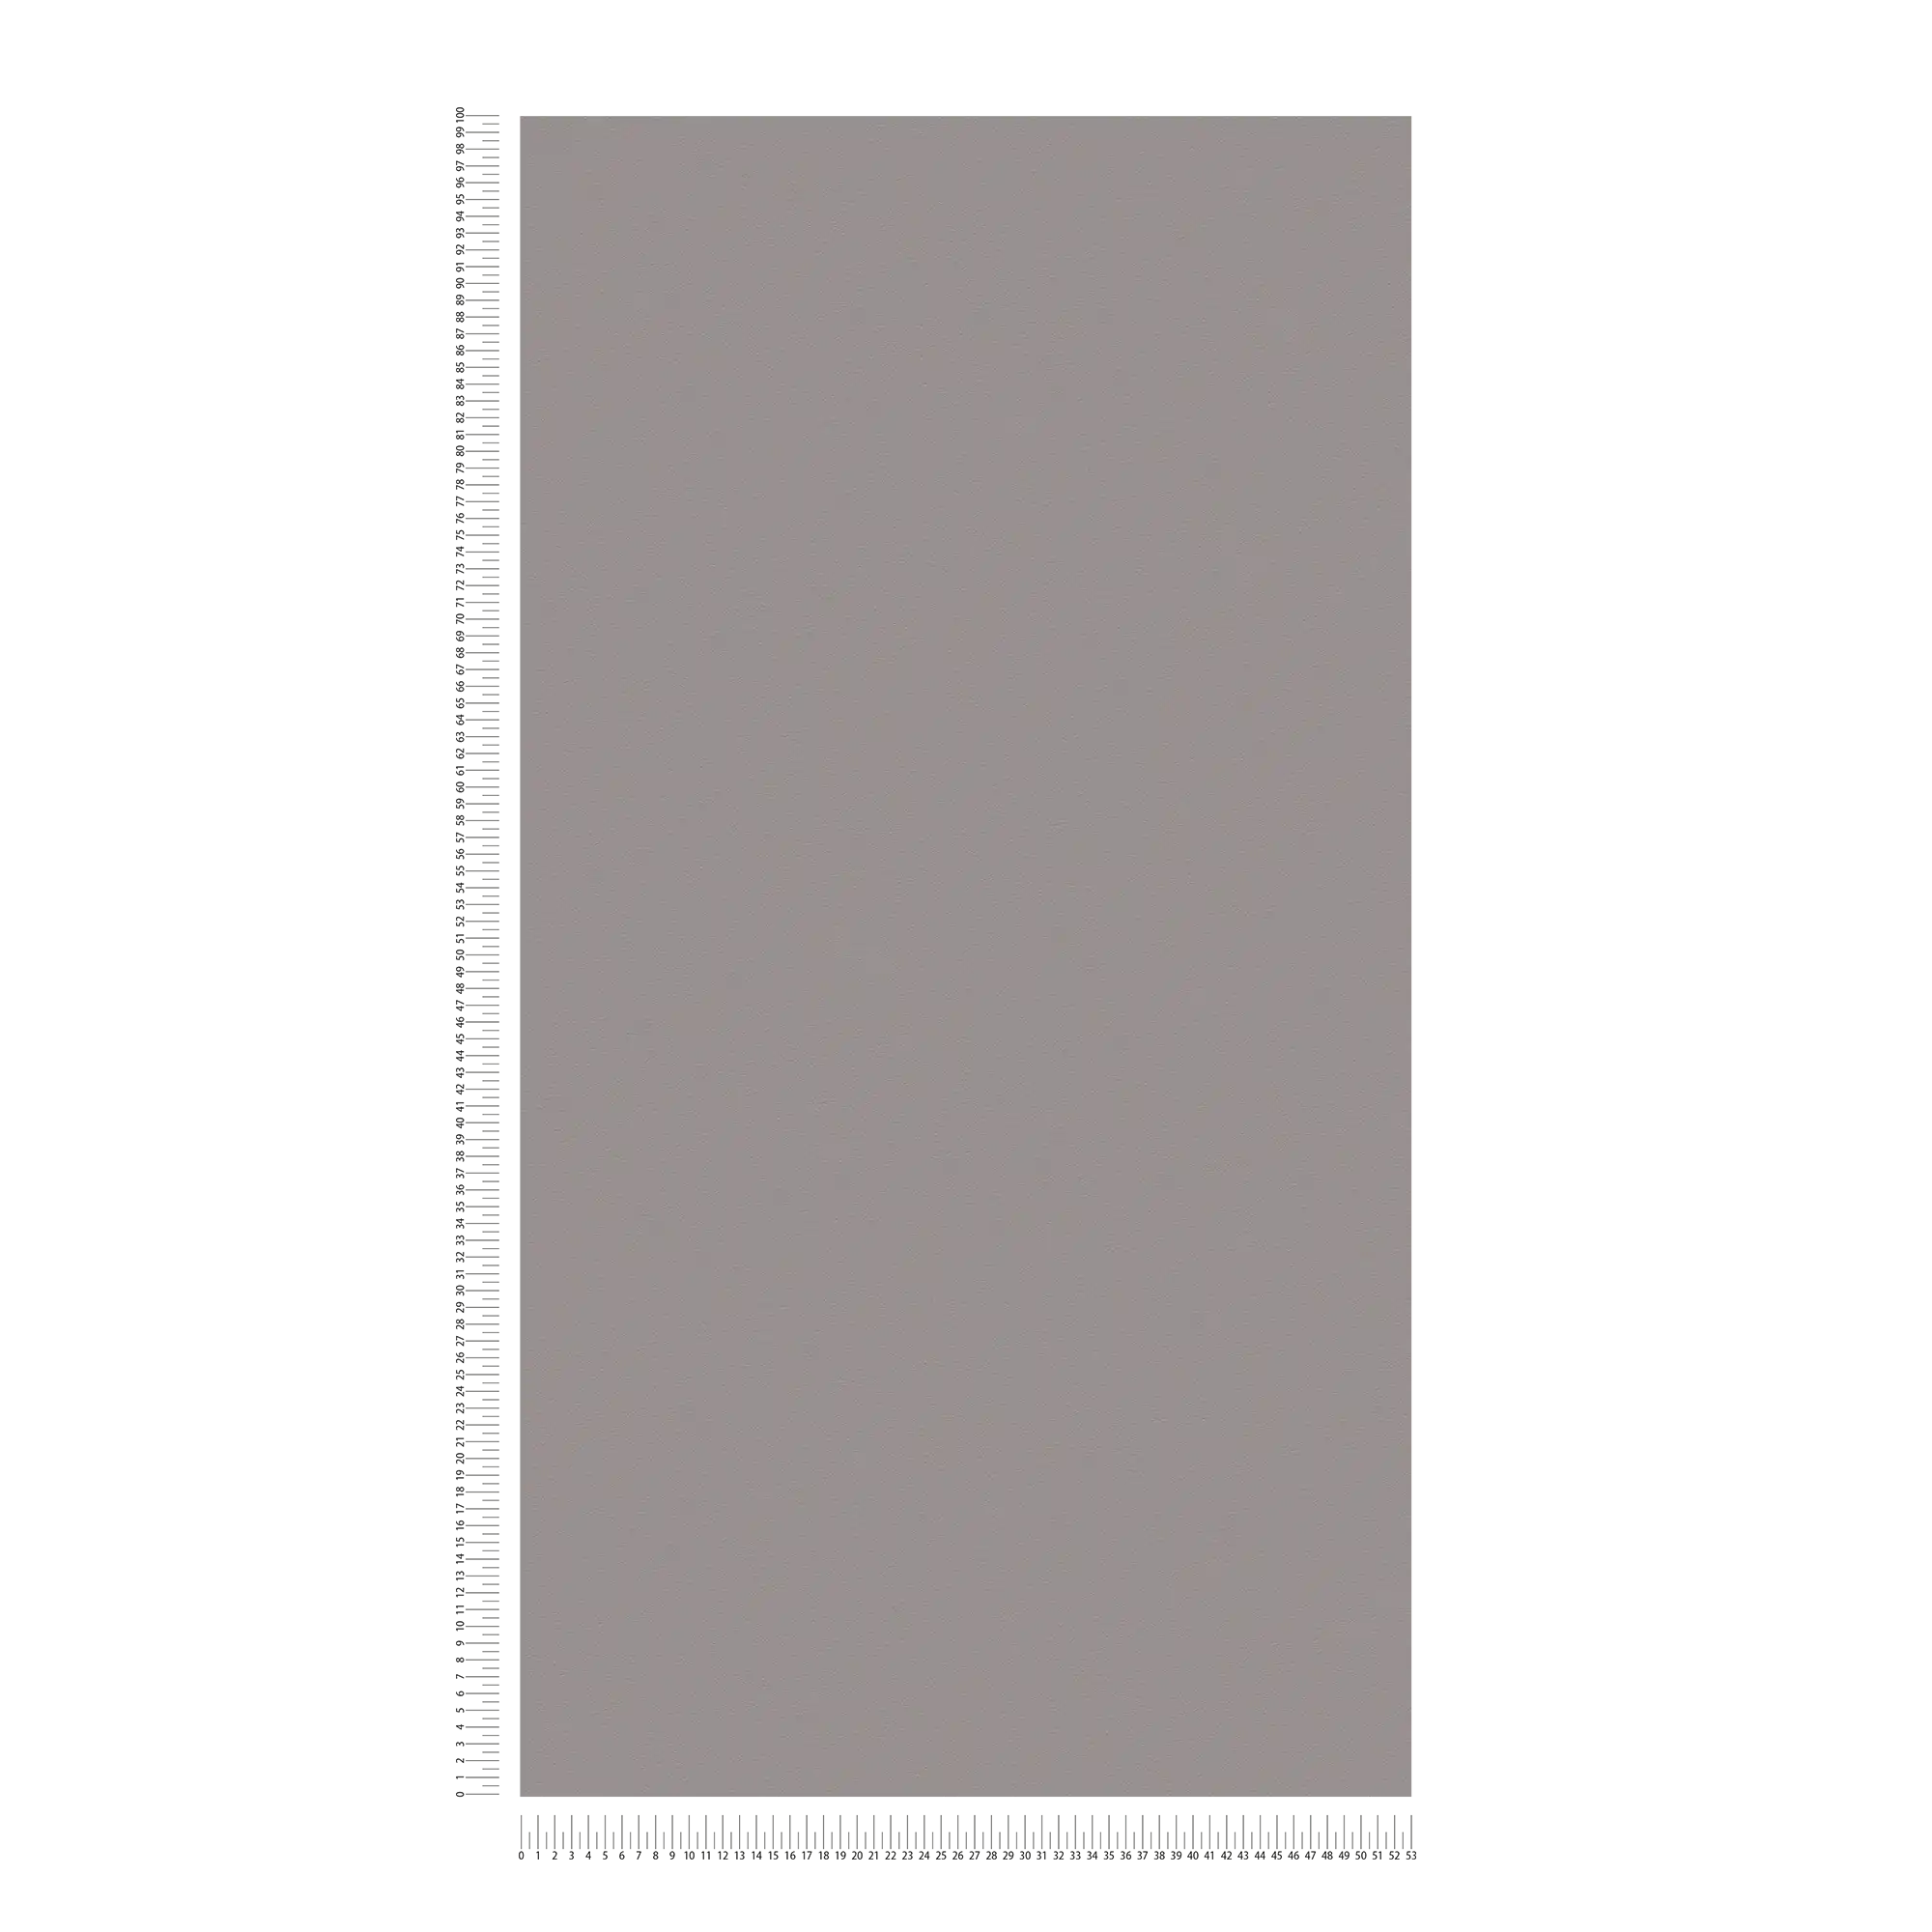             Carta da parati in tessuto non tessuto grigio scuro con superficie liscia - Grigio
        